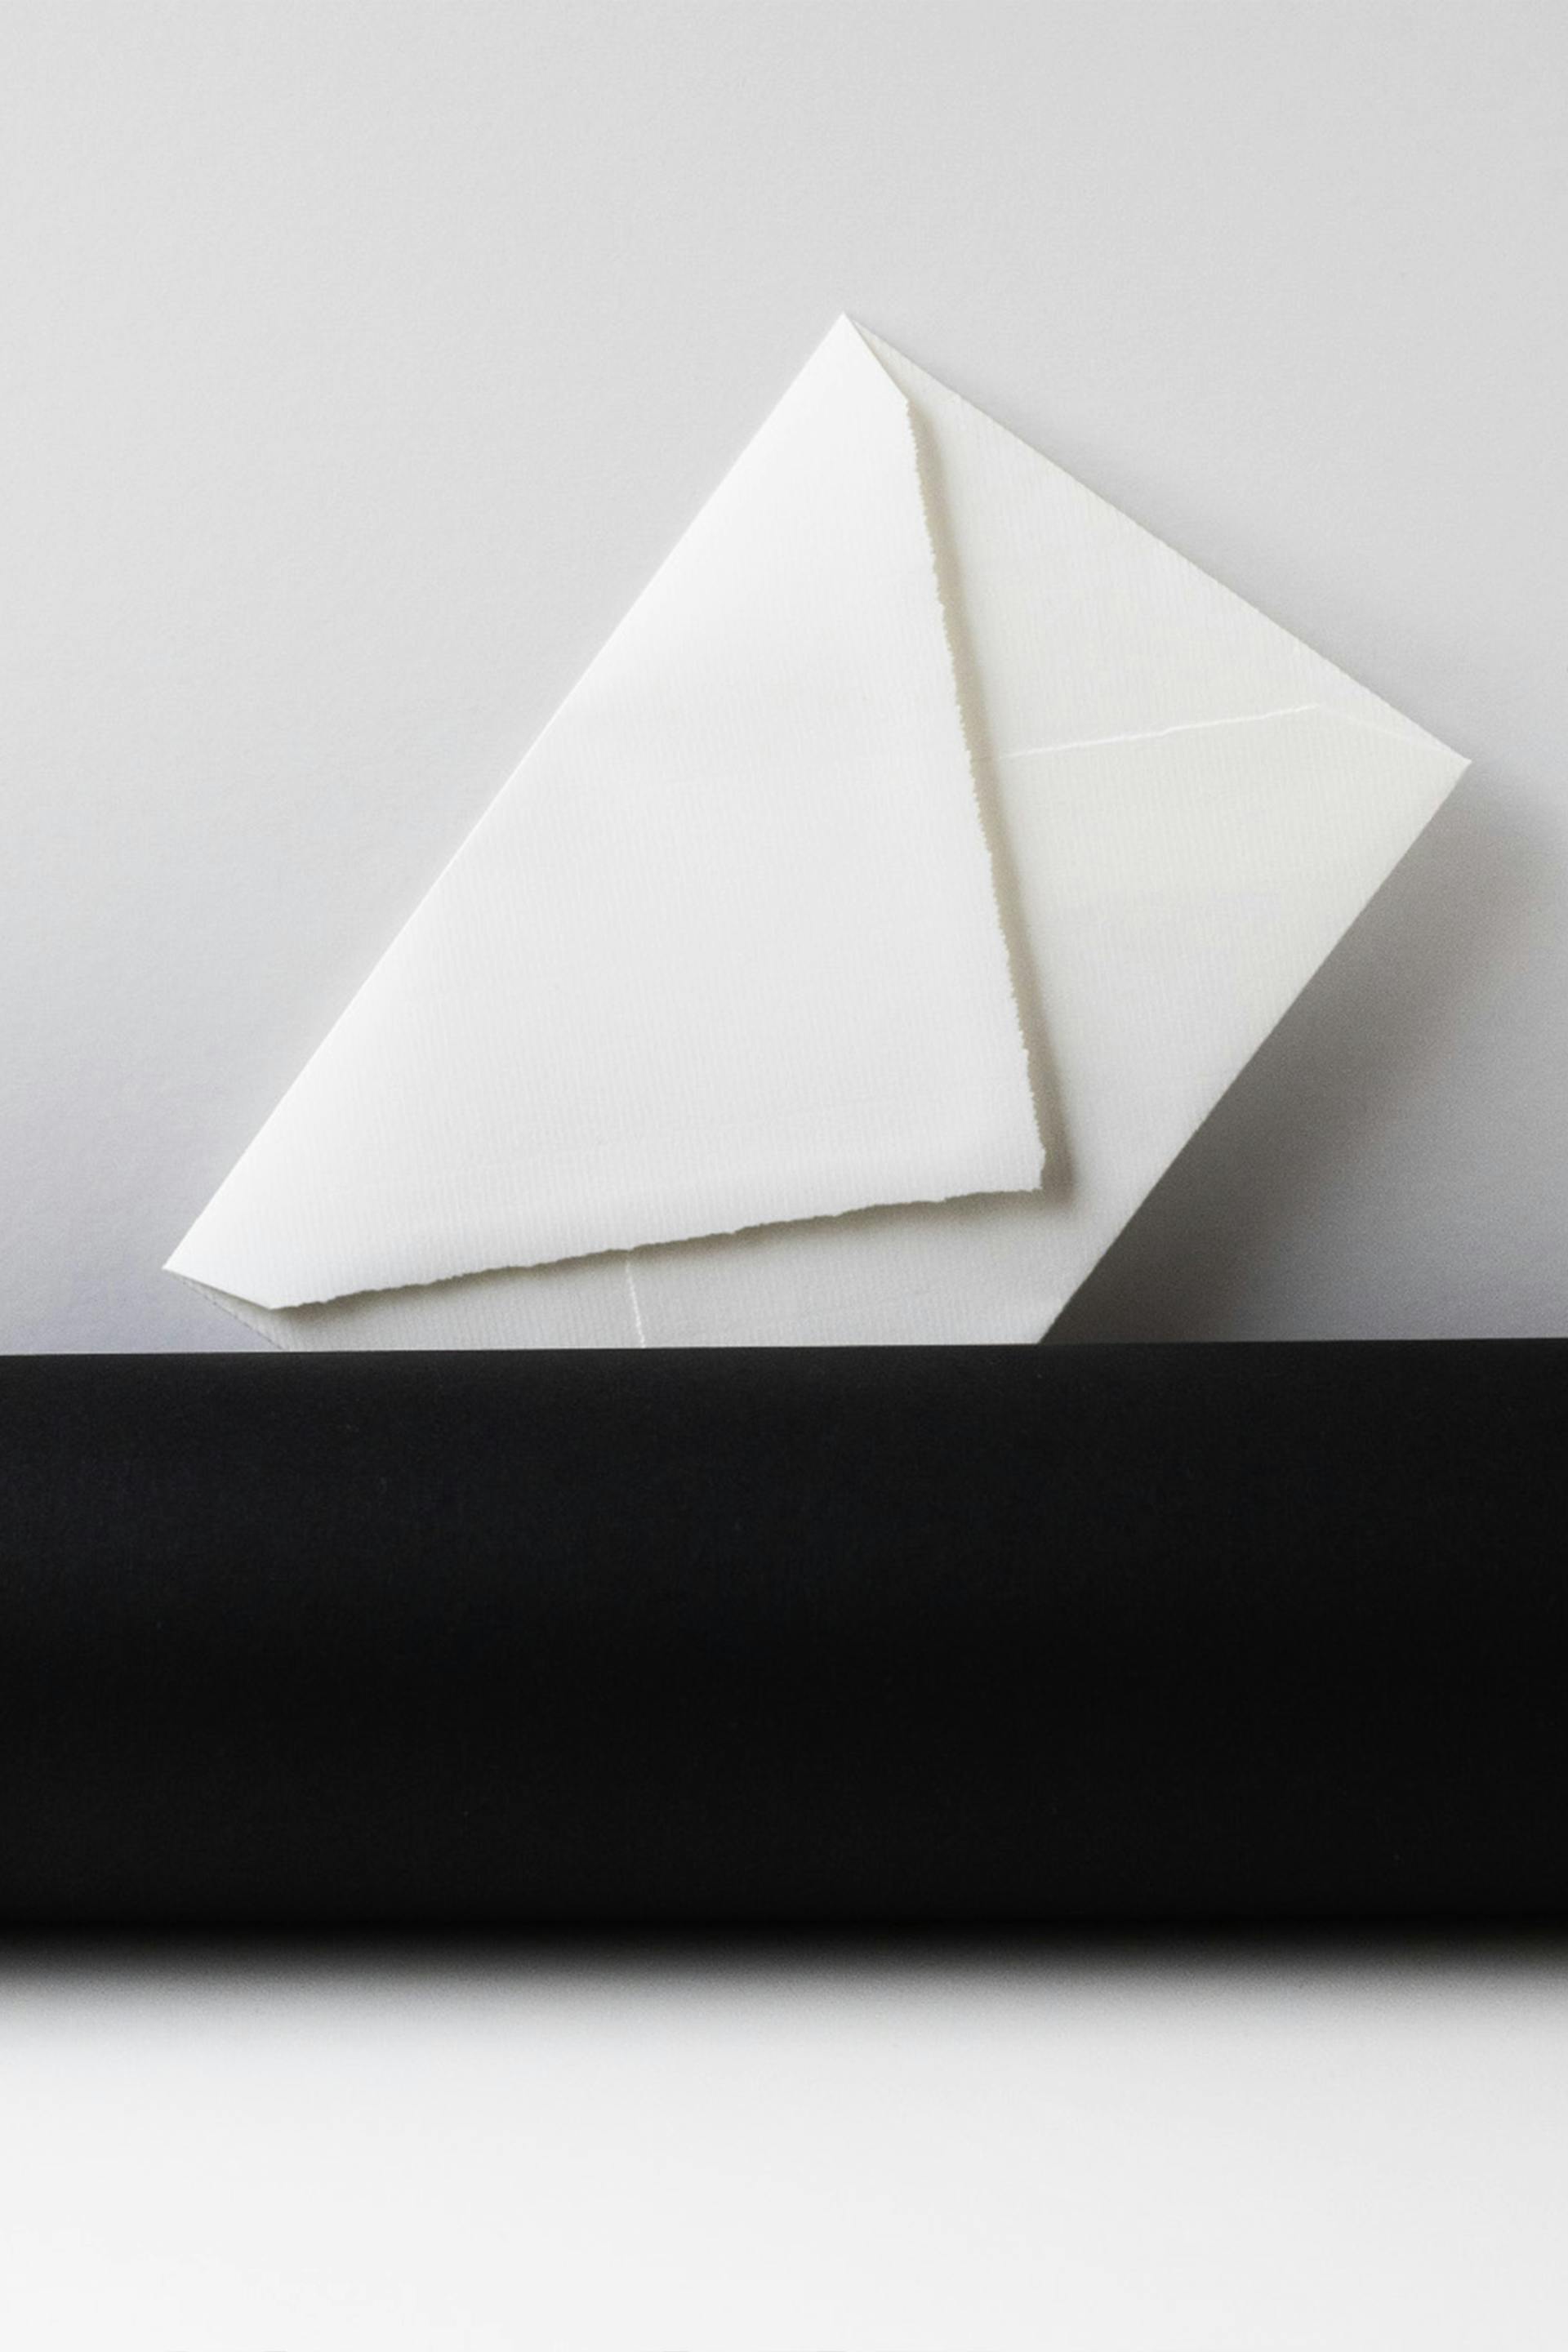 A white envelope | Source: Unsplash